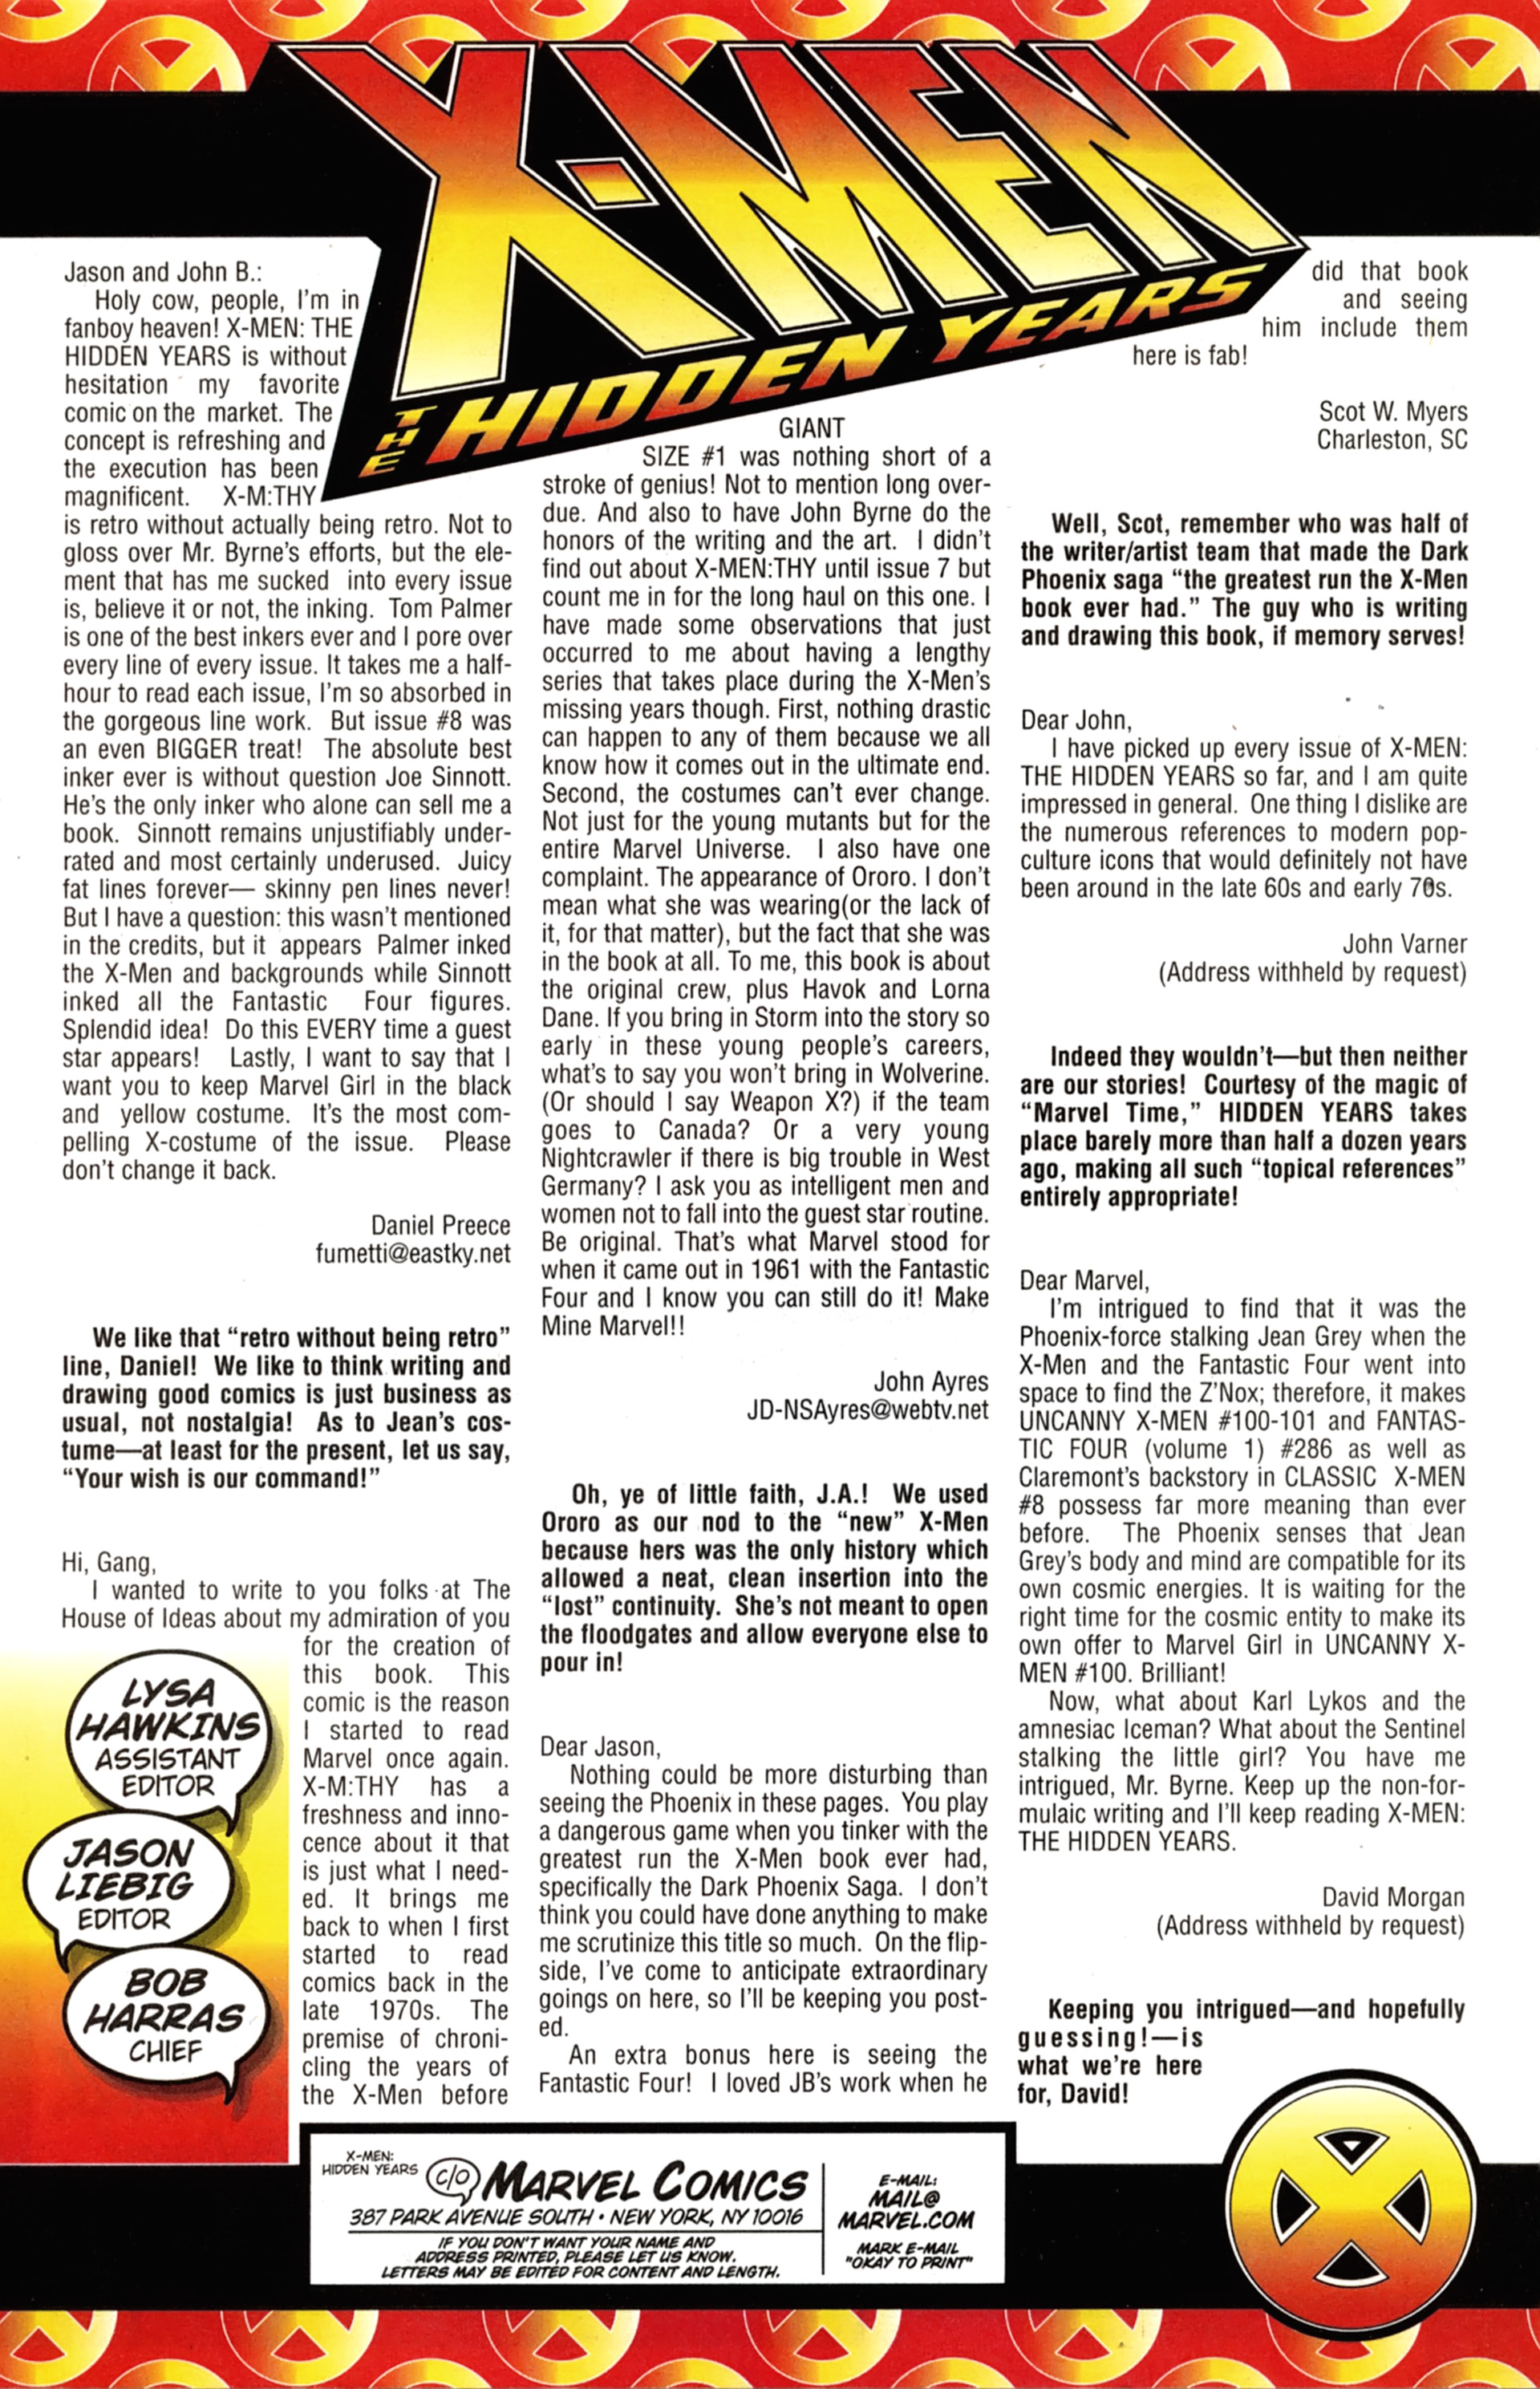 Read online X-Men: Hidden Years comic -  Issue #10 - 48